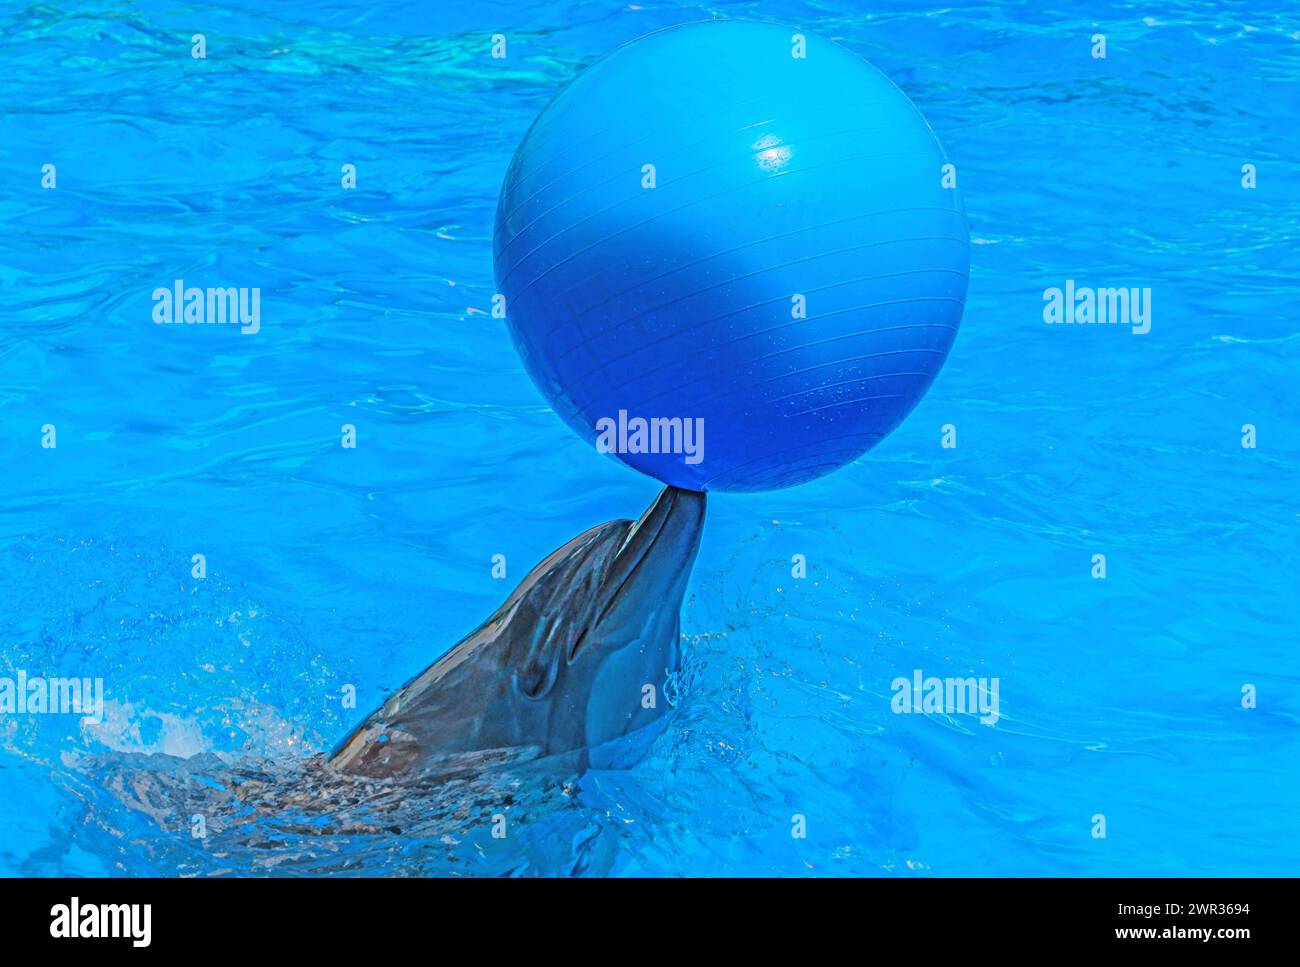 Verspielter Delfin, der einen hellblauen Ball auf der Nase balanciert. Der Delfin schwimmt in einem klaren blauen Pool. Der schlanke, graue Körper des Delfins steht im Kontrast zum DE Stockfoto